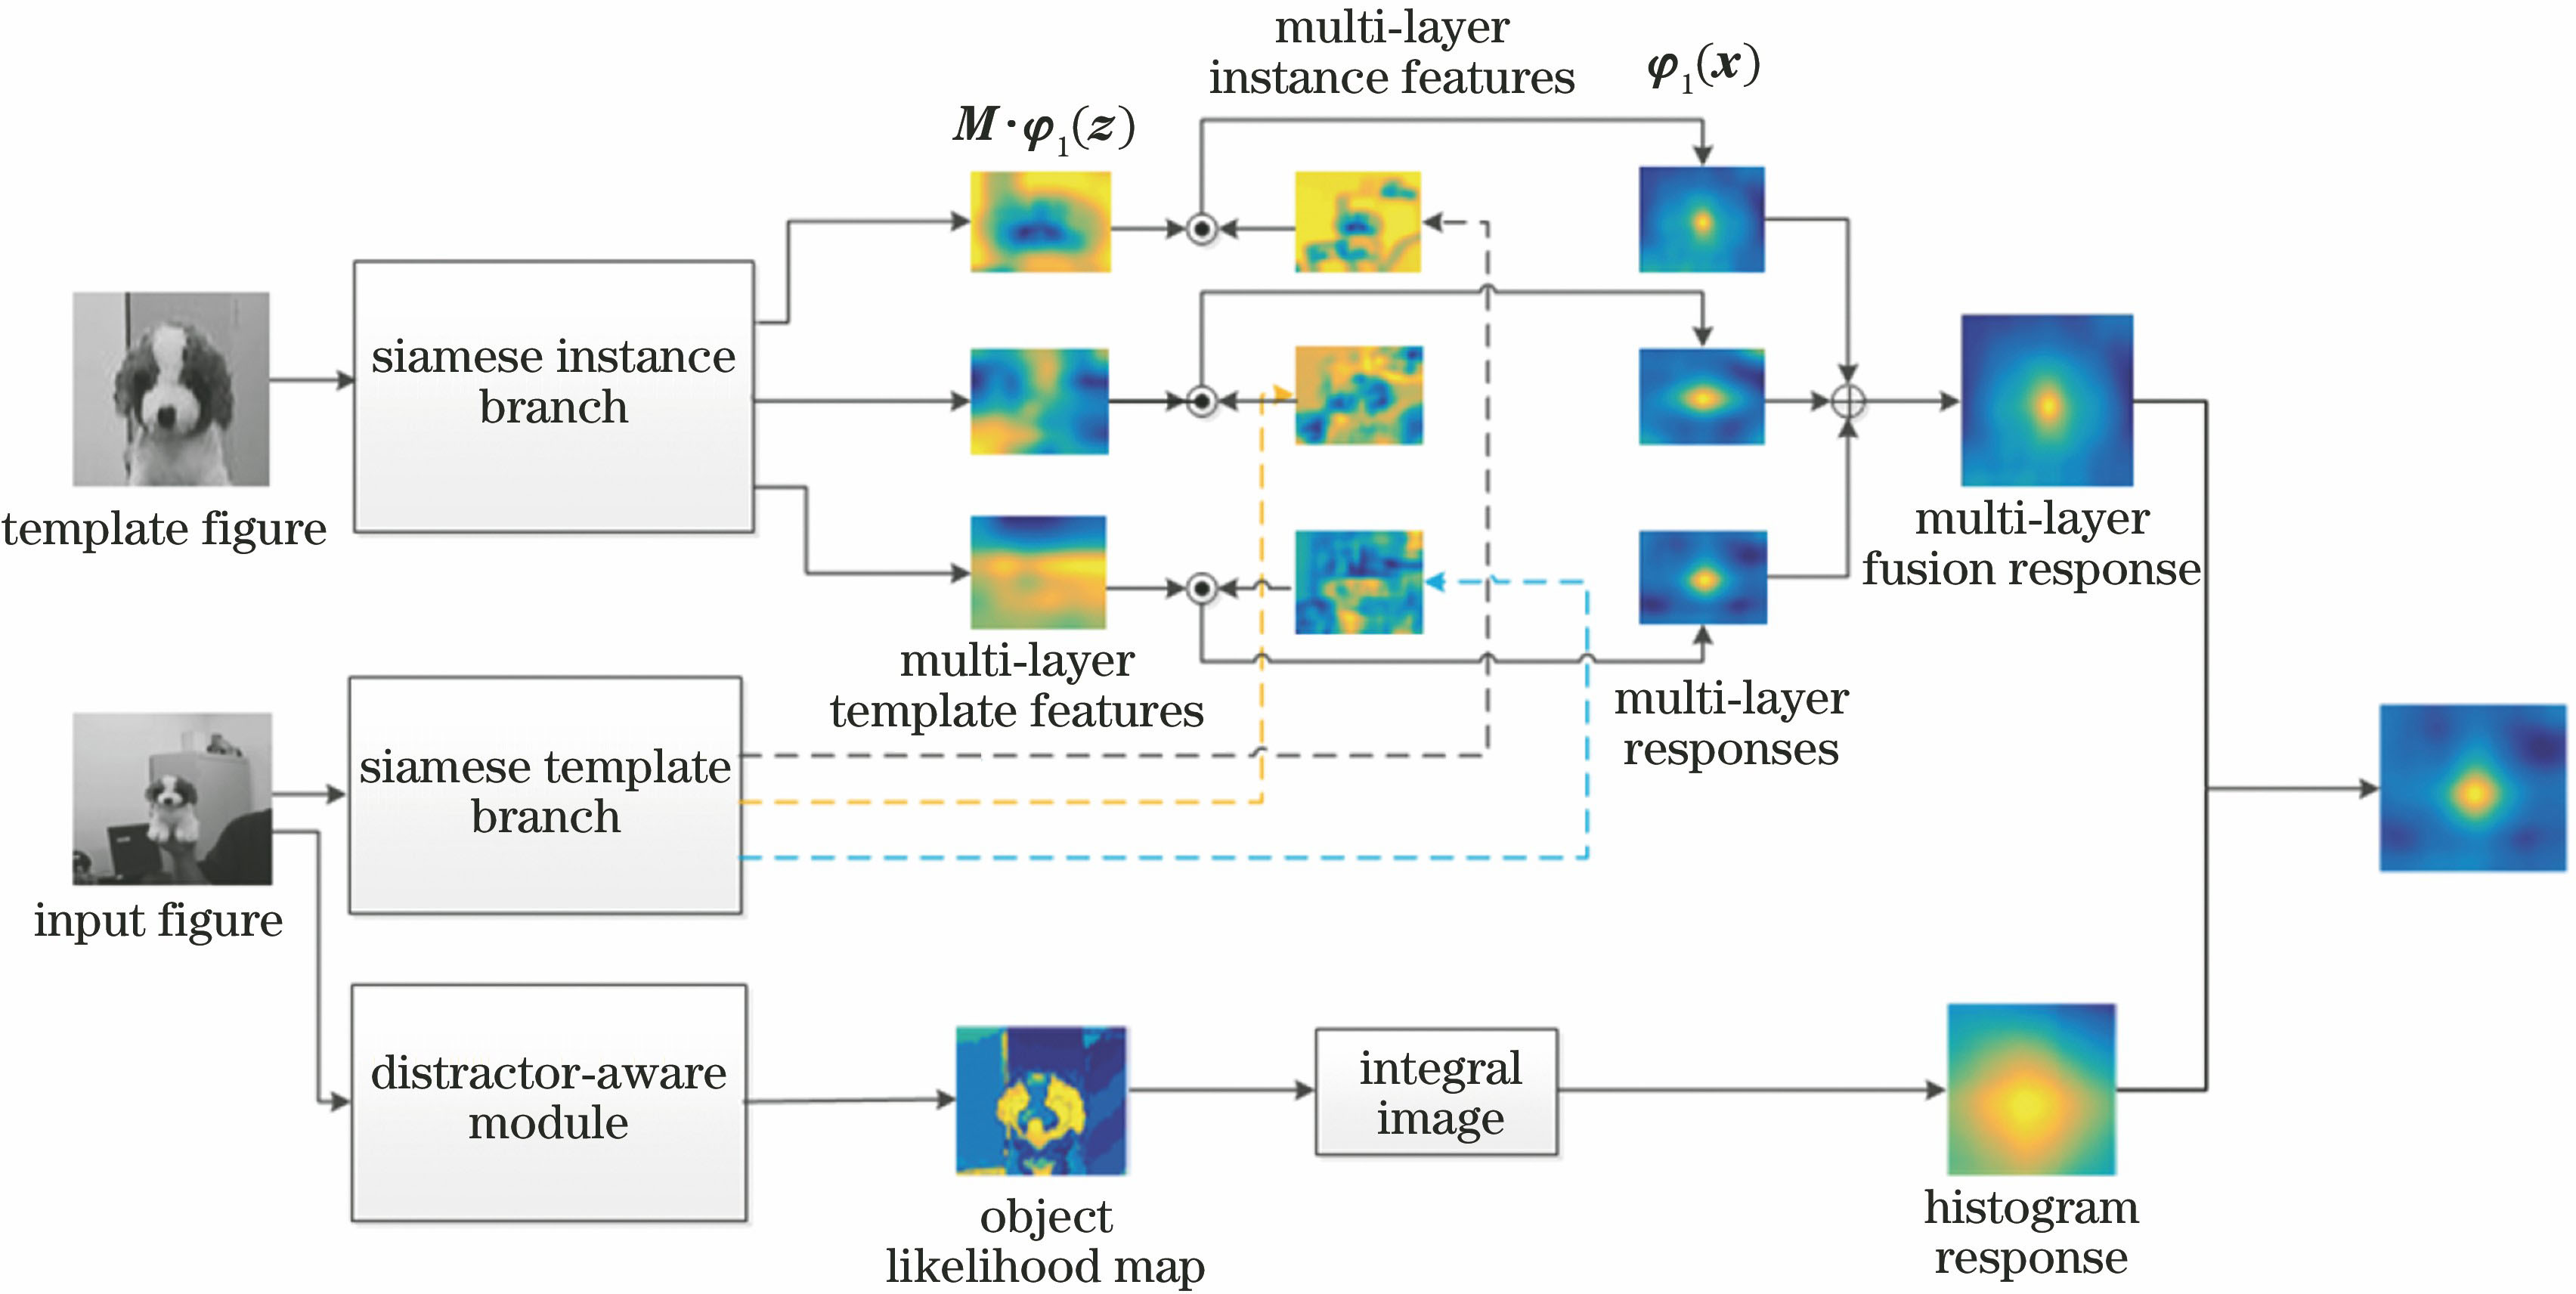 Algorithmic framework diagram in this paper